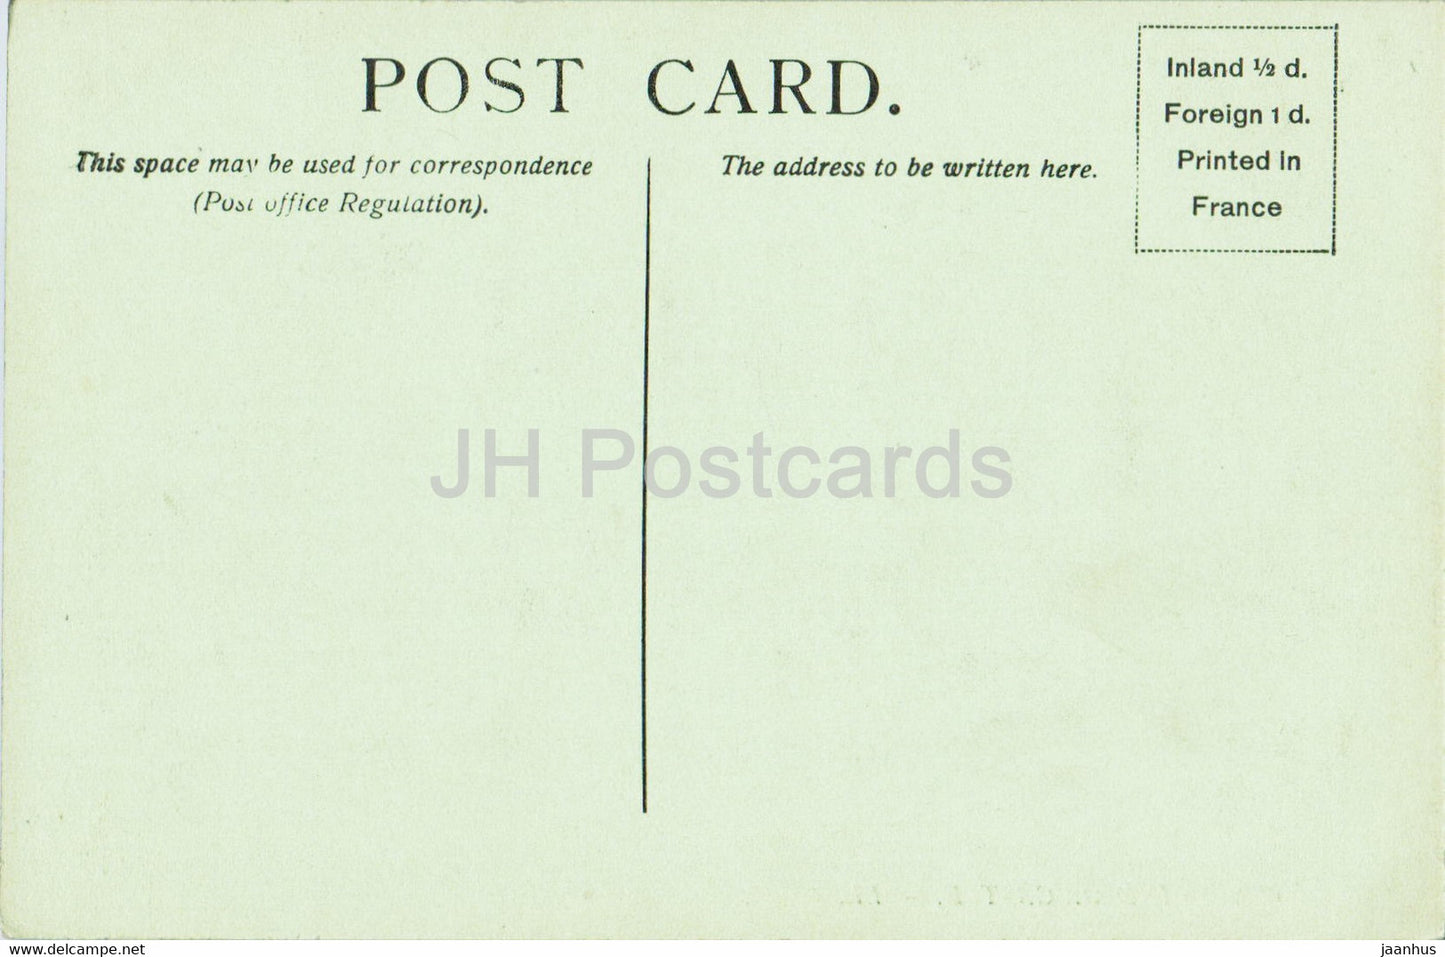 Windsor Castle – 499 – alte Postkarte – England – Vereinigtes Königreich – unbenutzt